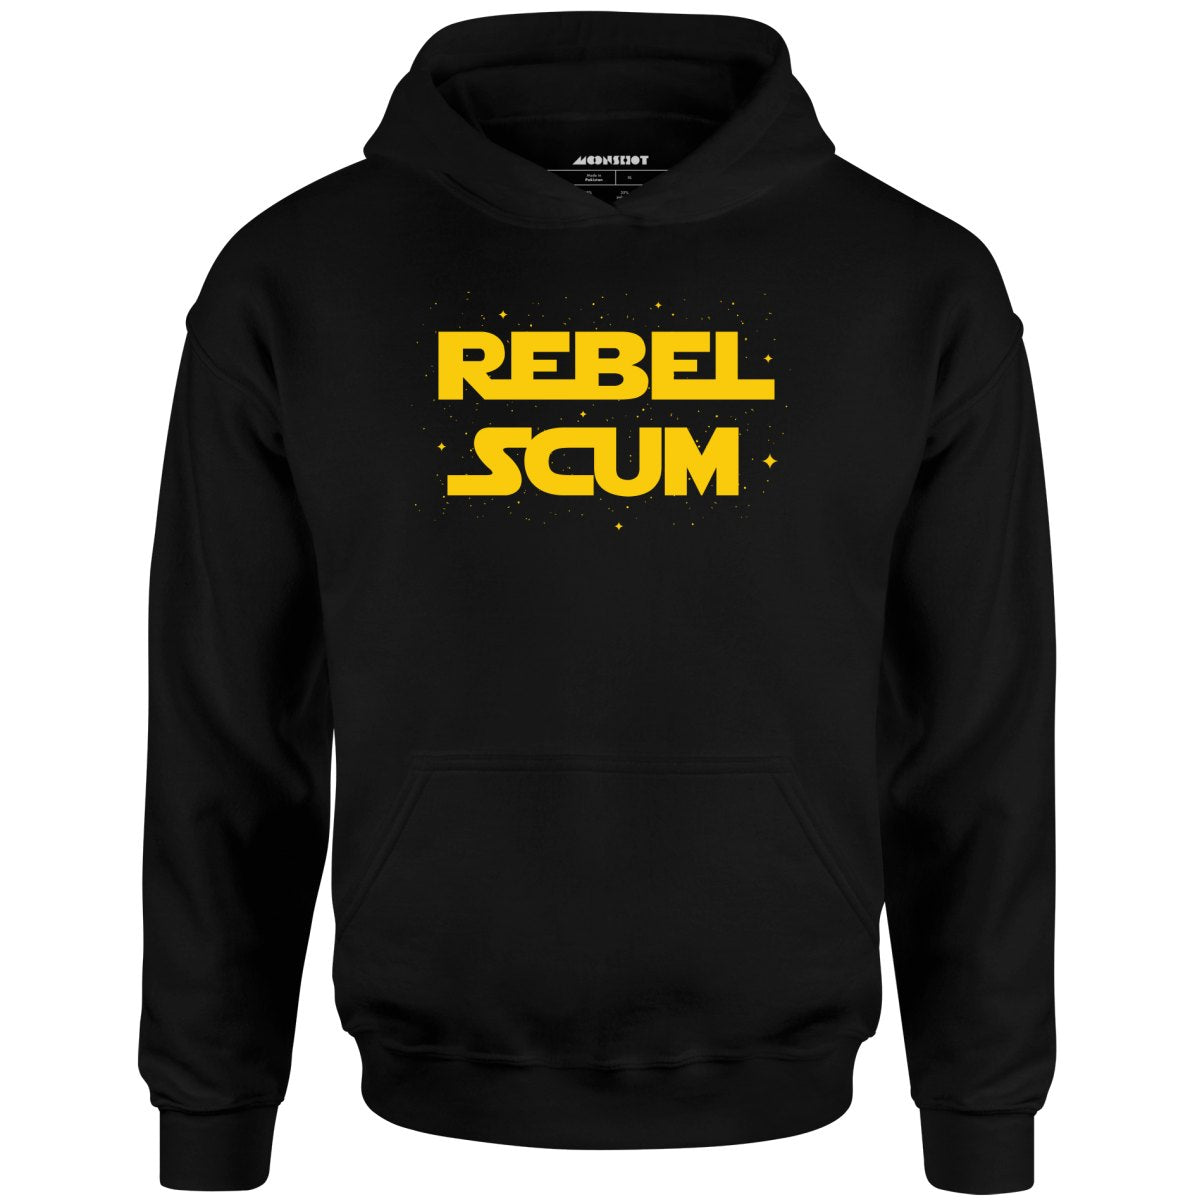 Rebel Scum - Unisex Hoodie